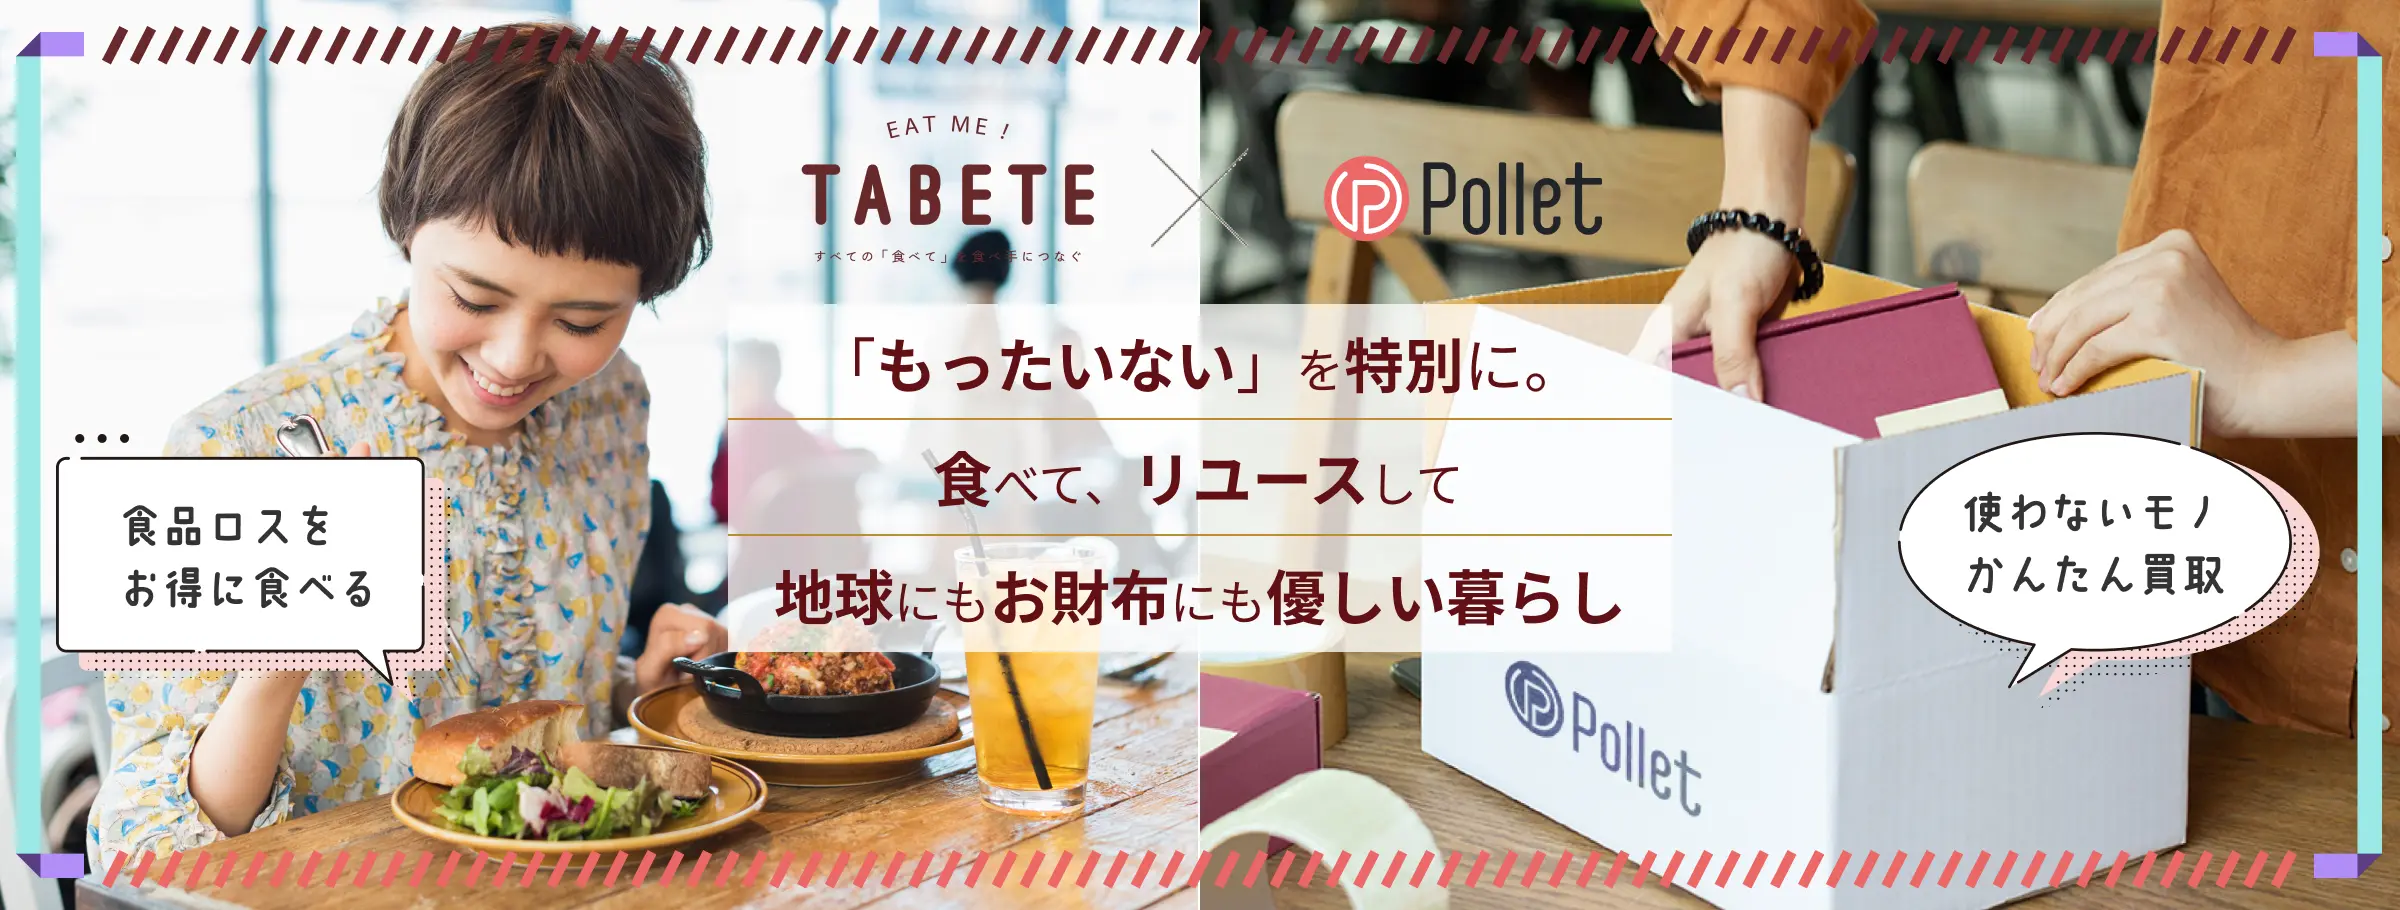 TABETExPollet「もったいない」を特別に。食べて、リユースして地球にもお財布にも優しい暮らし！食品ロスをお得に食べるTABETE、使わないモノかんたん買取のPollet